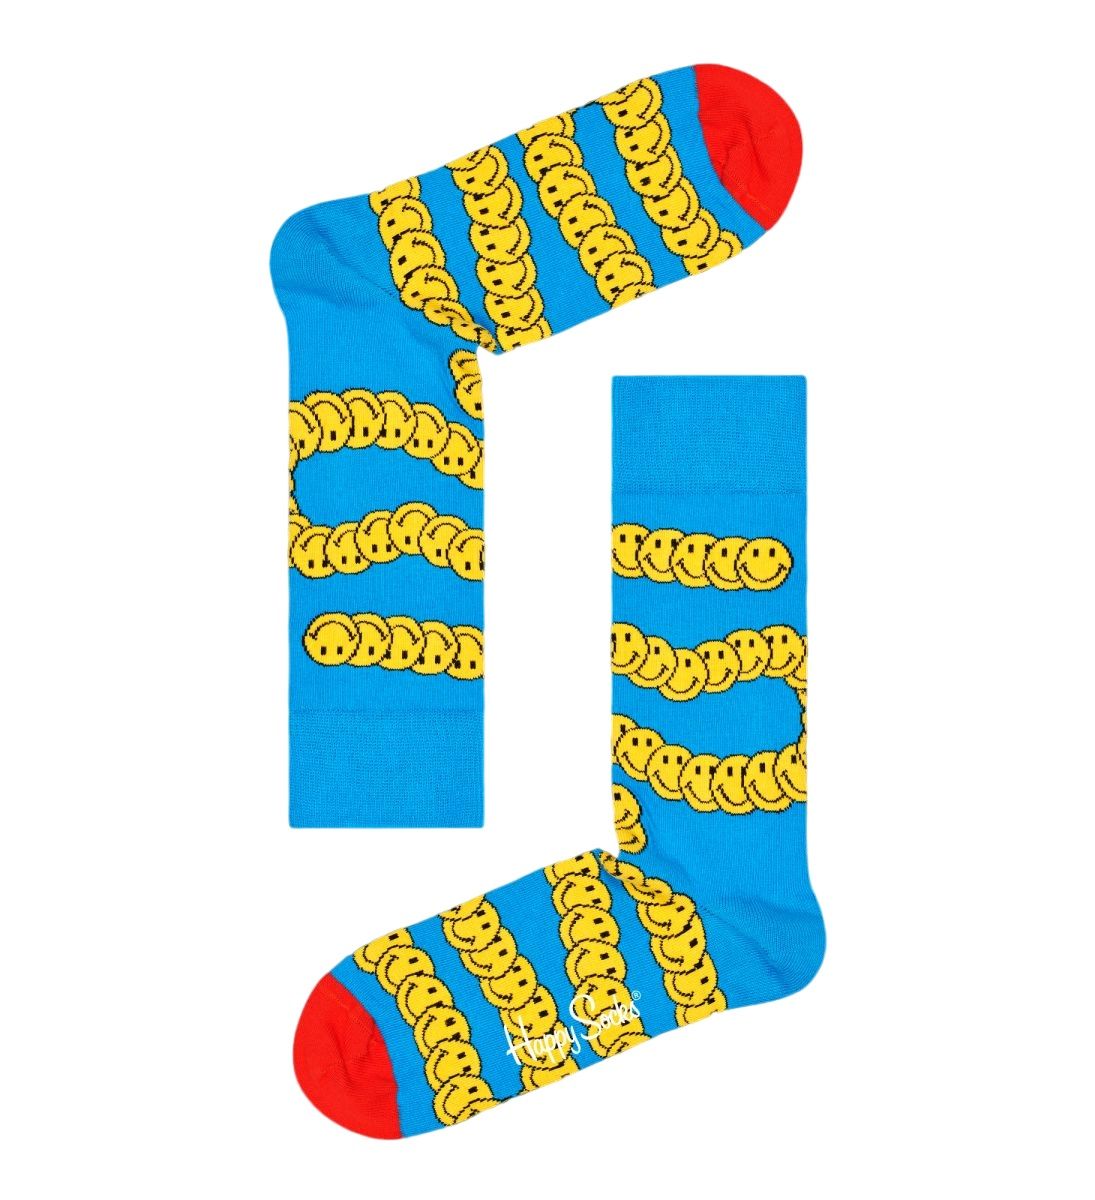 Носки унисекс Distorted Smiley Sock со змейкой из смайликов.